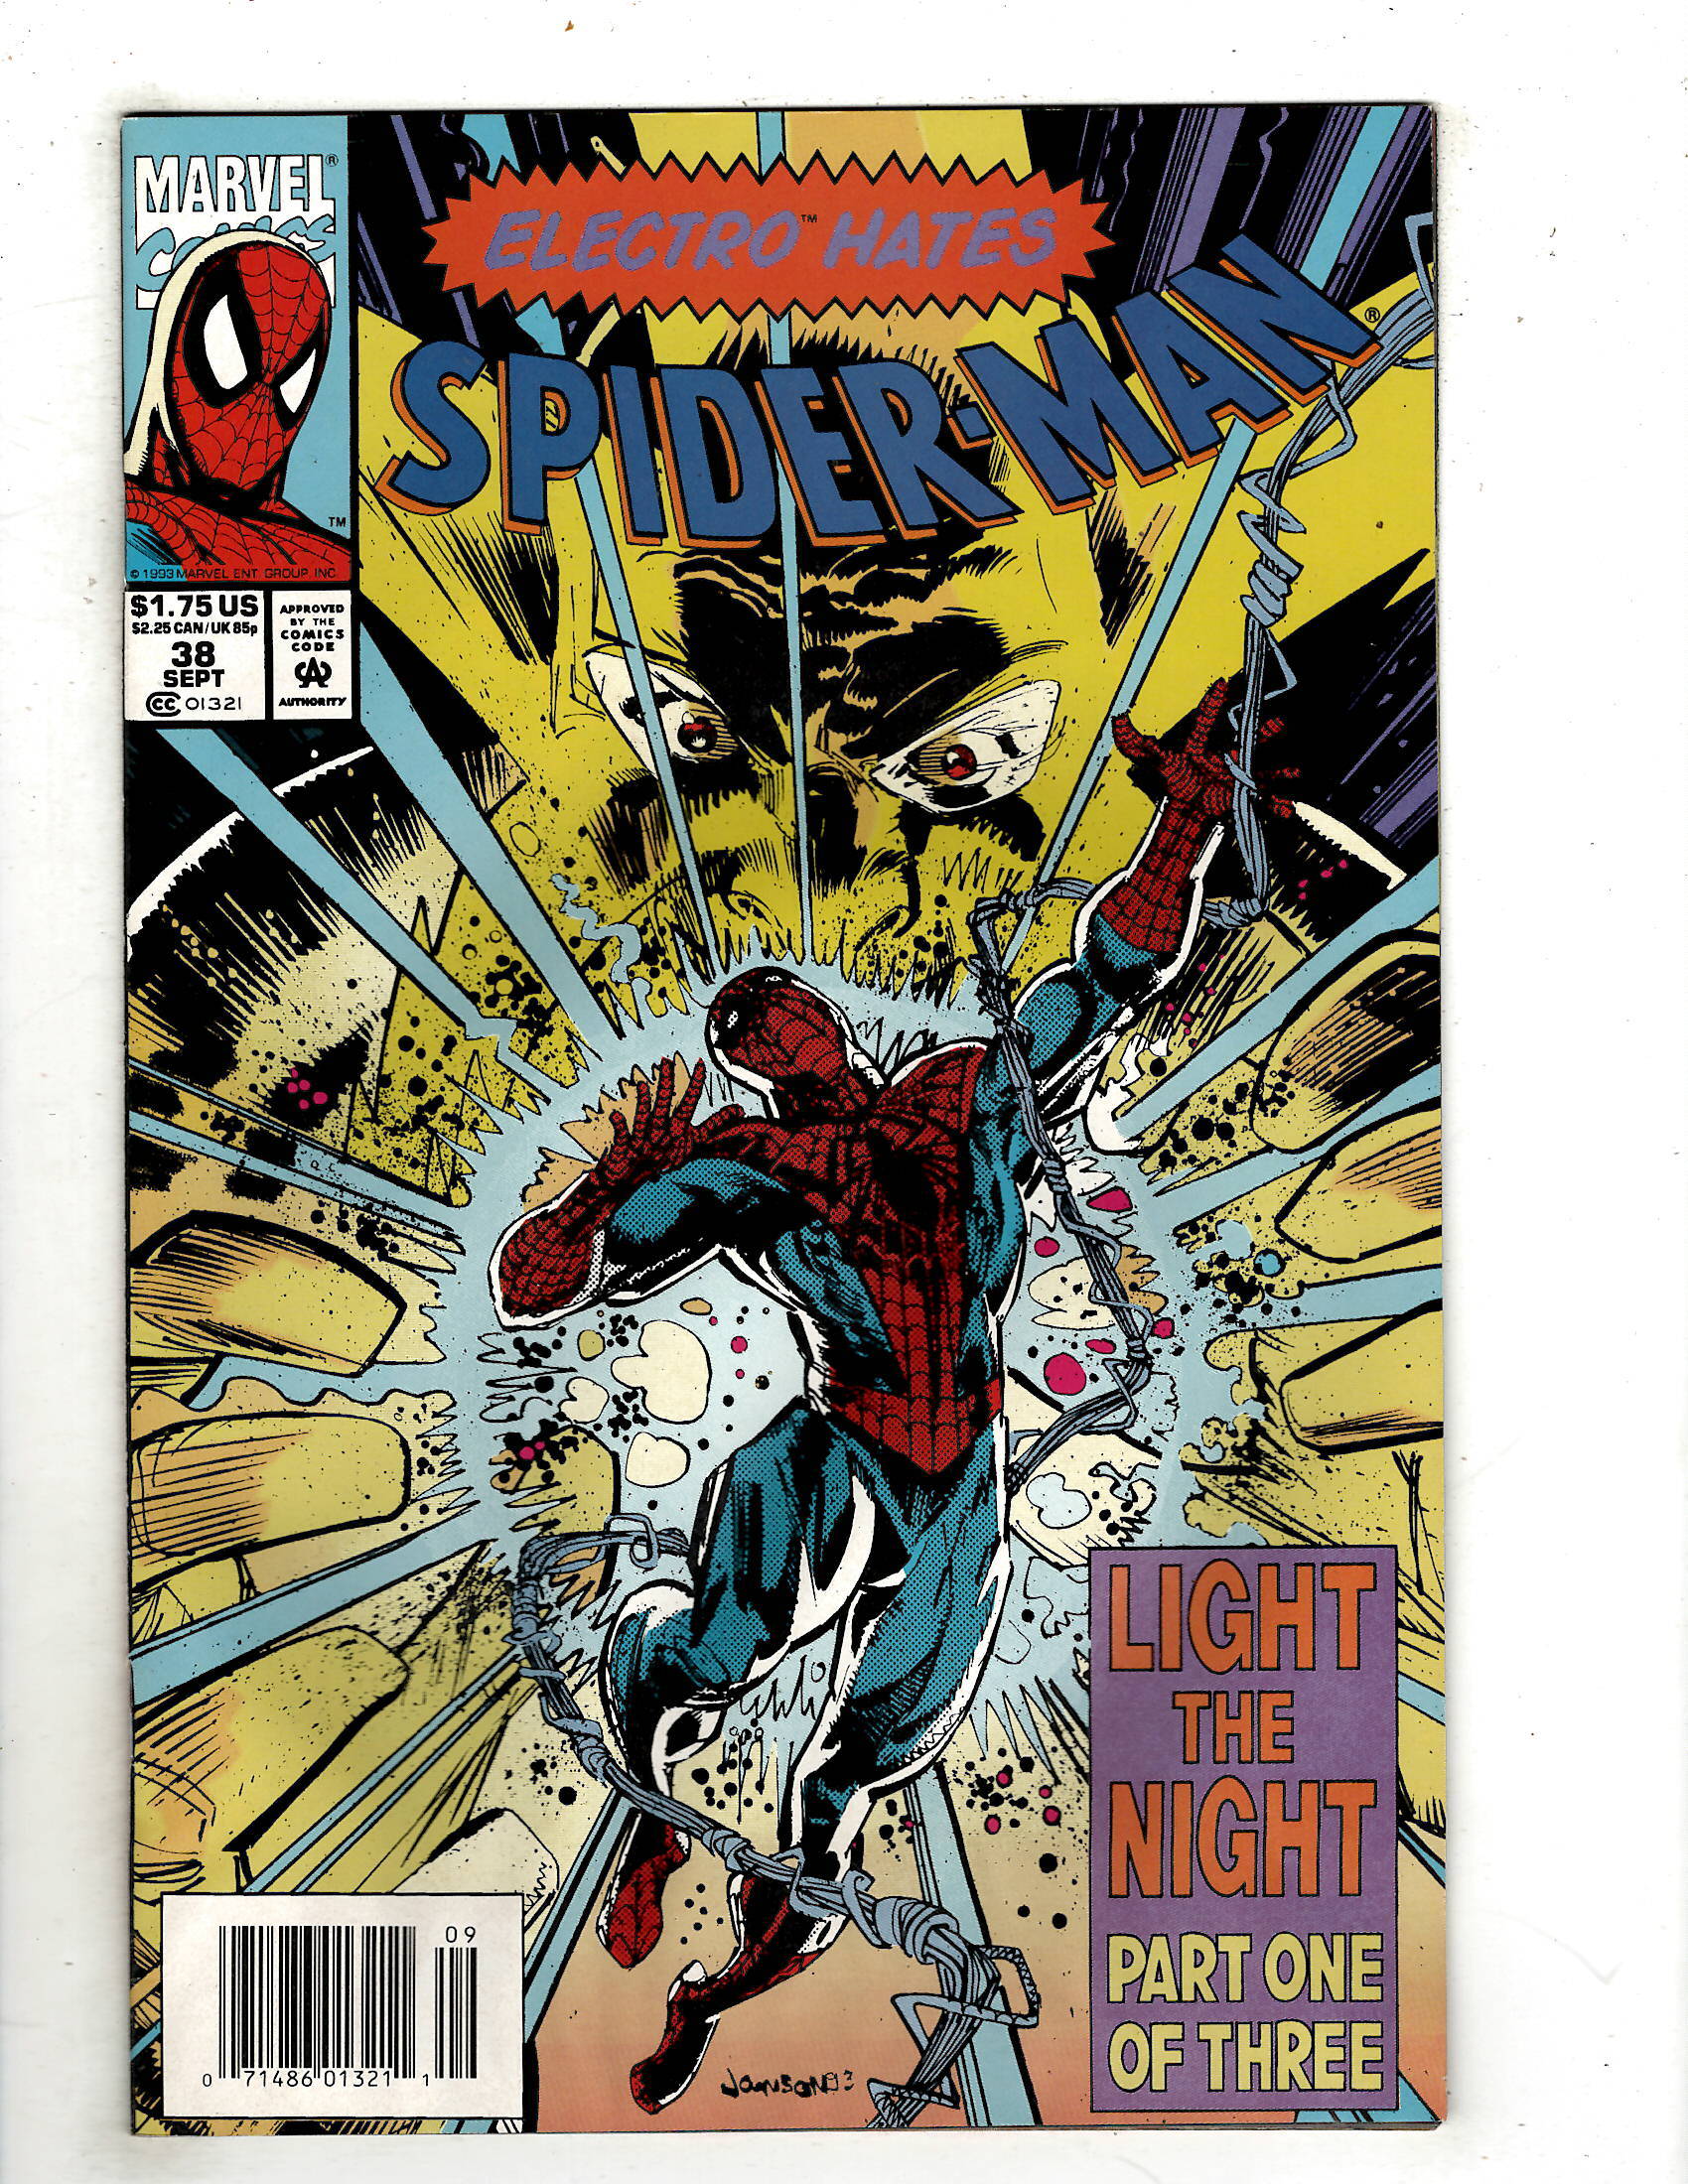 Spider-Man - #39 - Light The Night Part 2 of 3 - October 1993